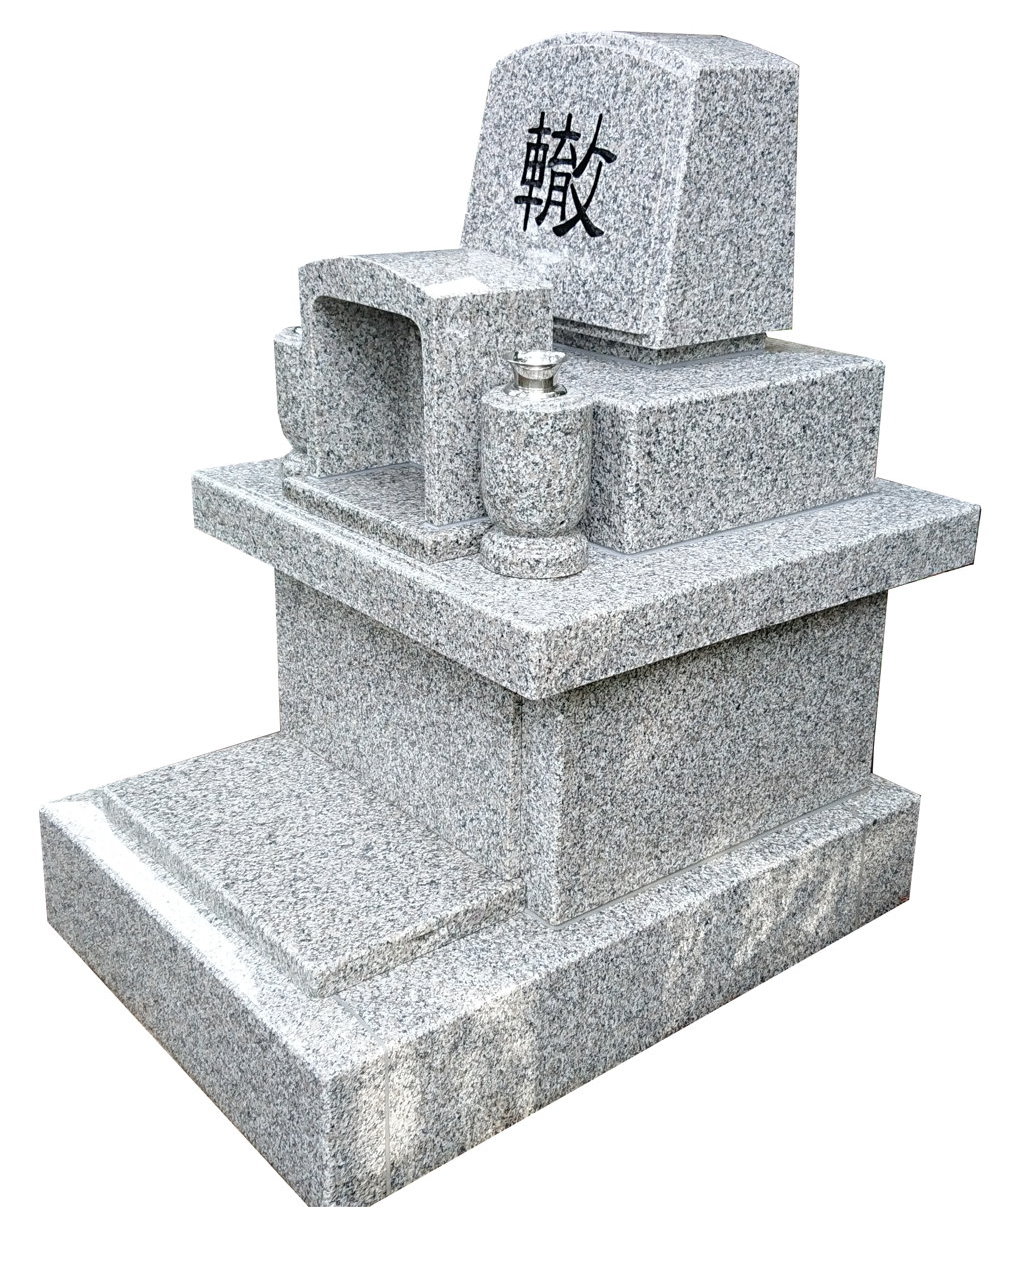 柳沢石材の共同墓